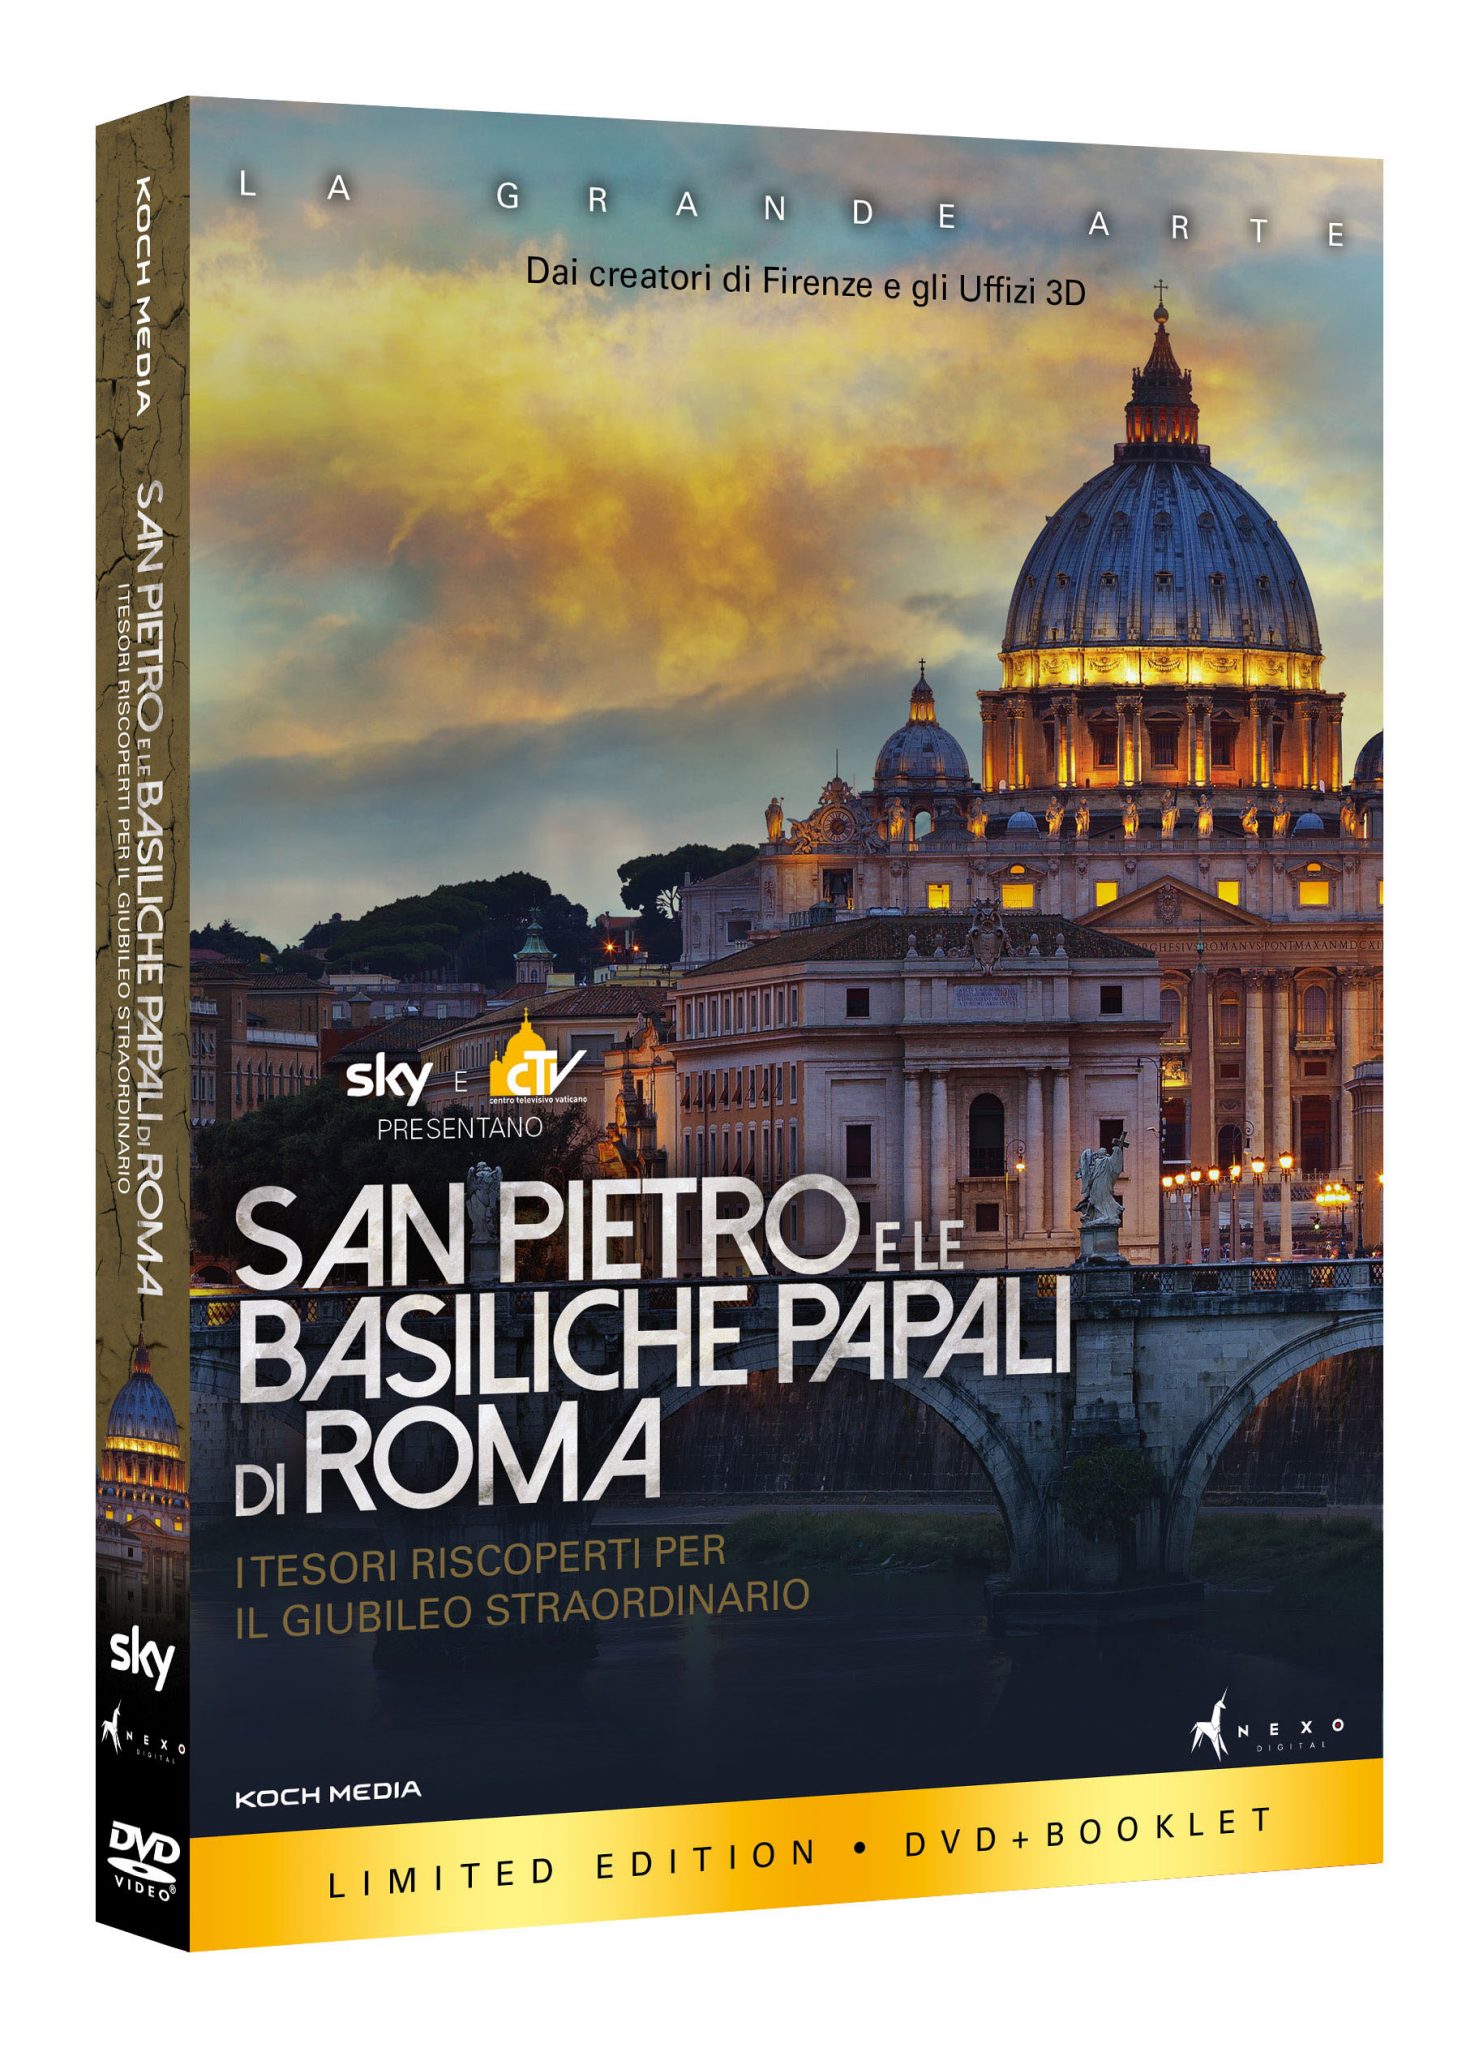 San Pietro e le Basiliche Papali di Roma, in Home Video dal 22 giugno. Clip esclusiva